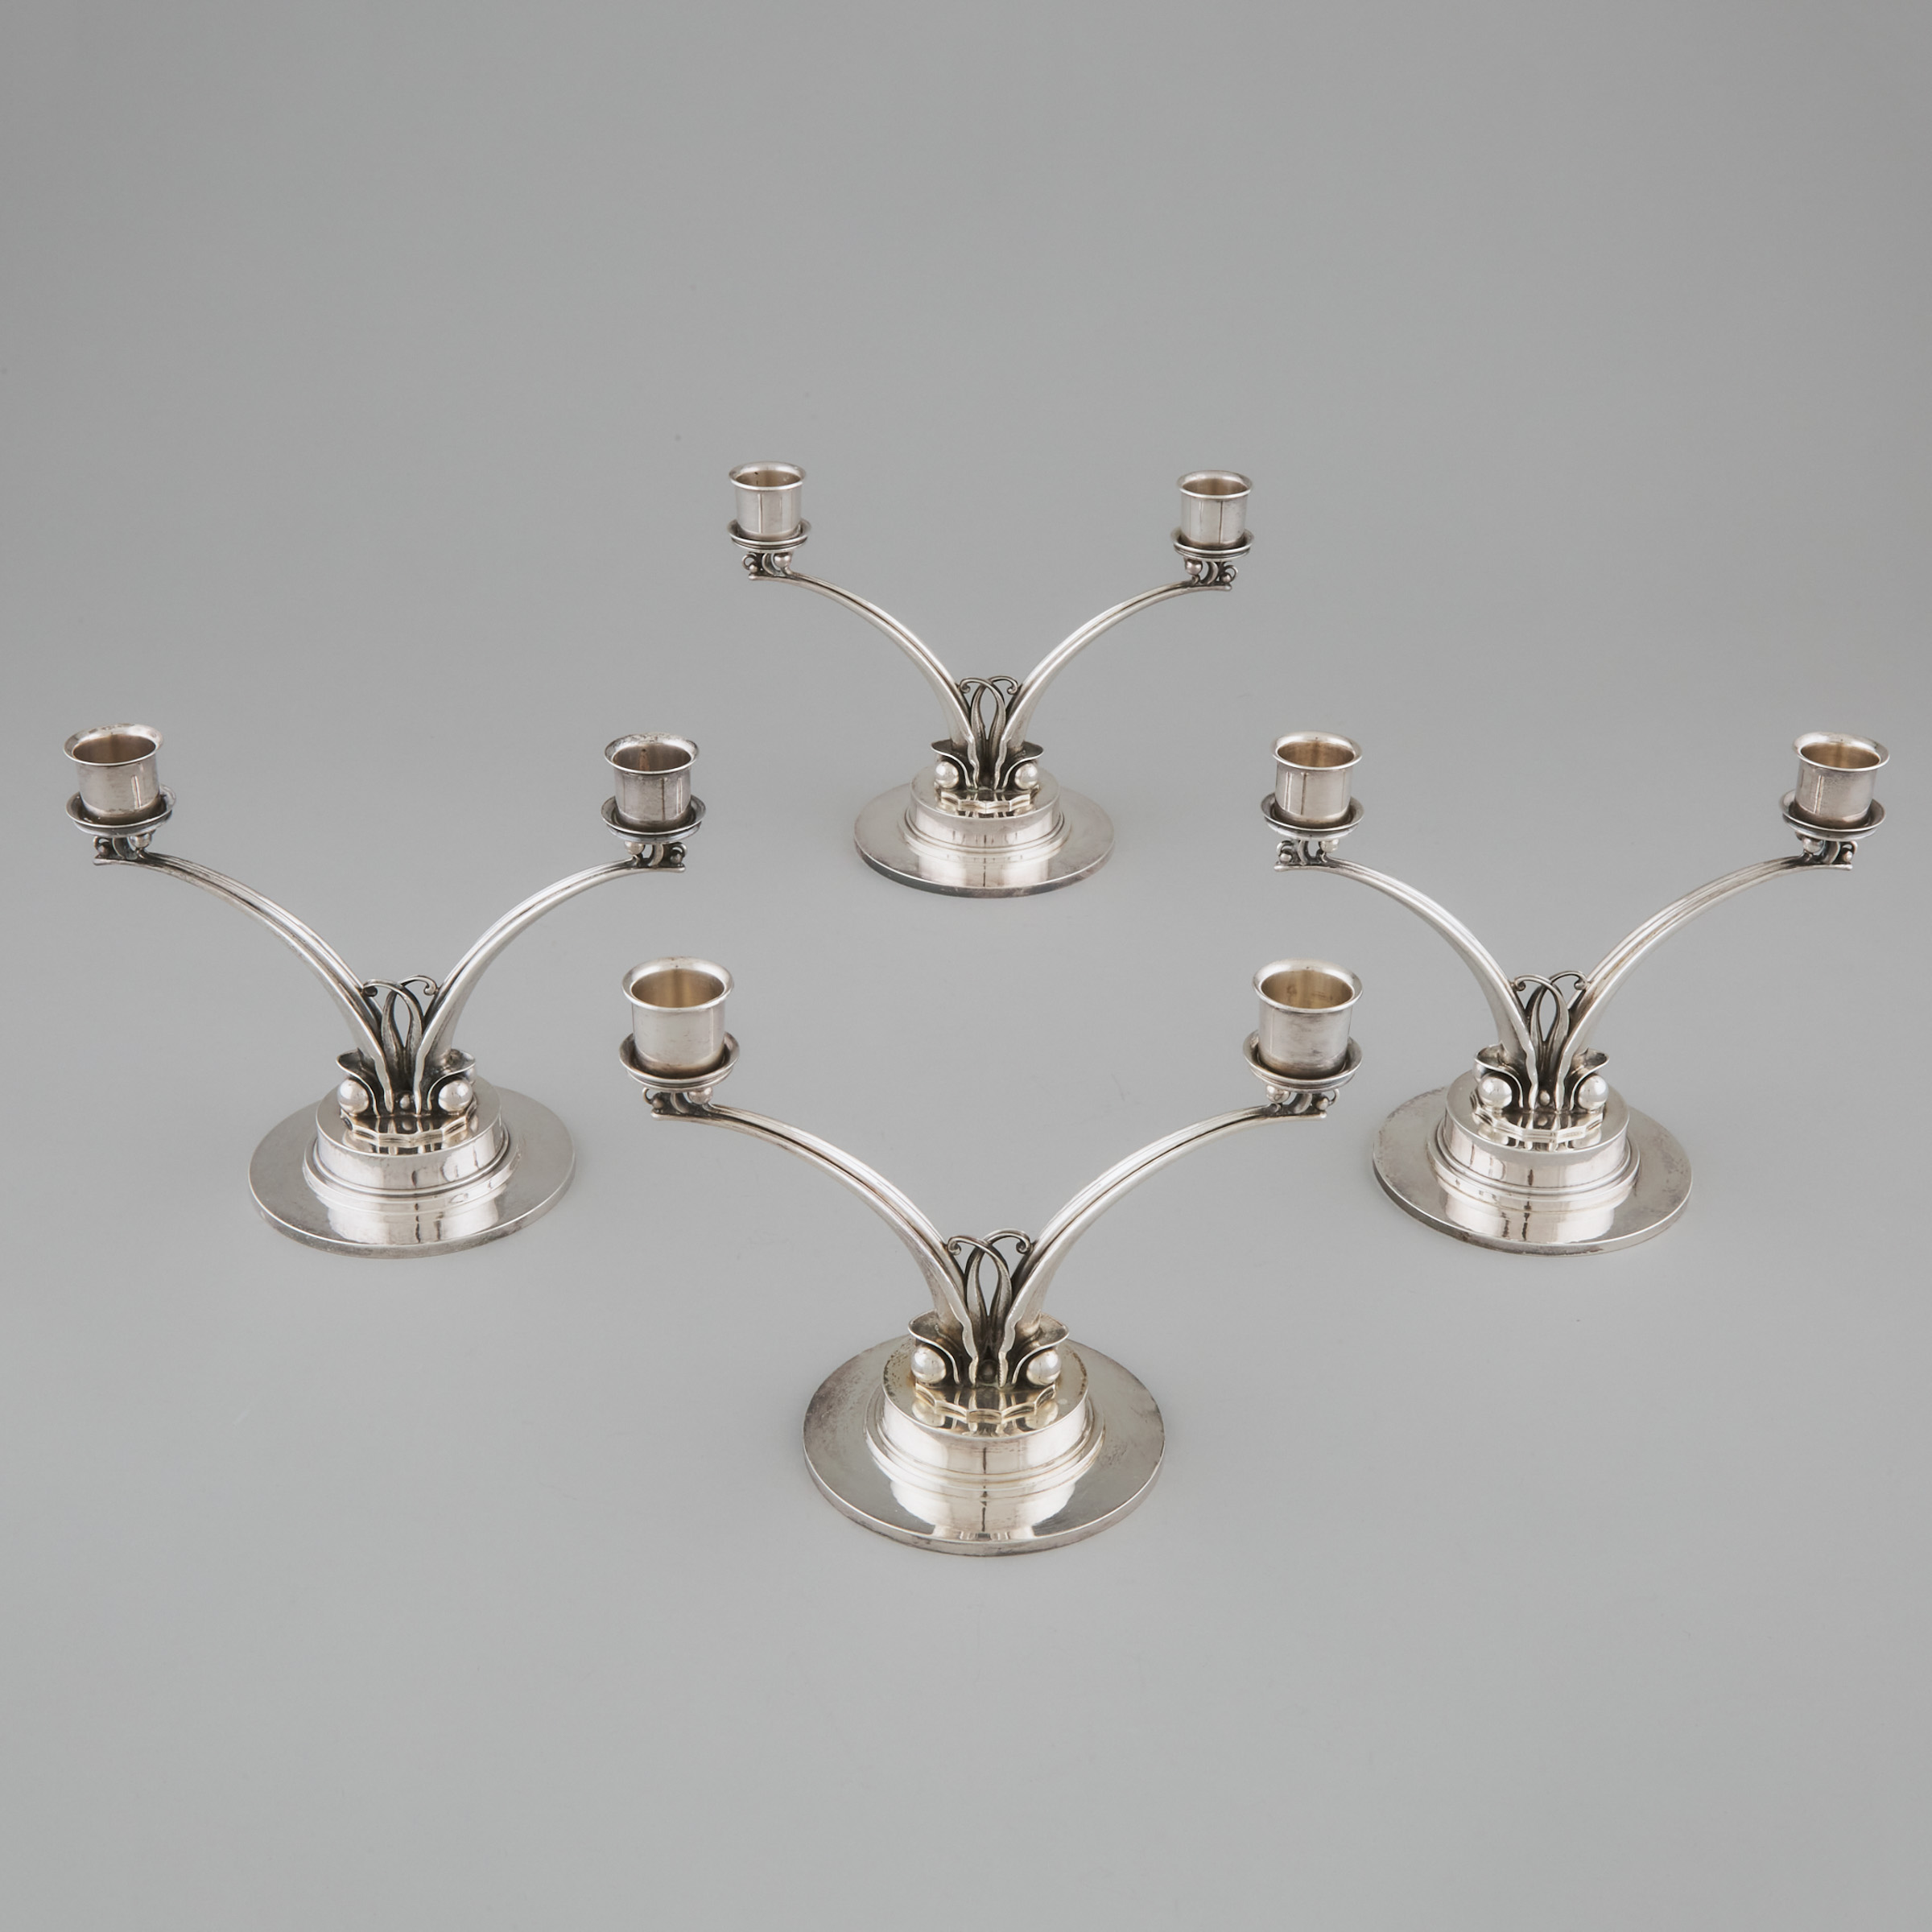 Set of Four Danish Silver Two-Light Candelabra, #278, Harald Nielsen for Georg Jensen, Copenhagen, post-1945